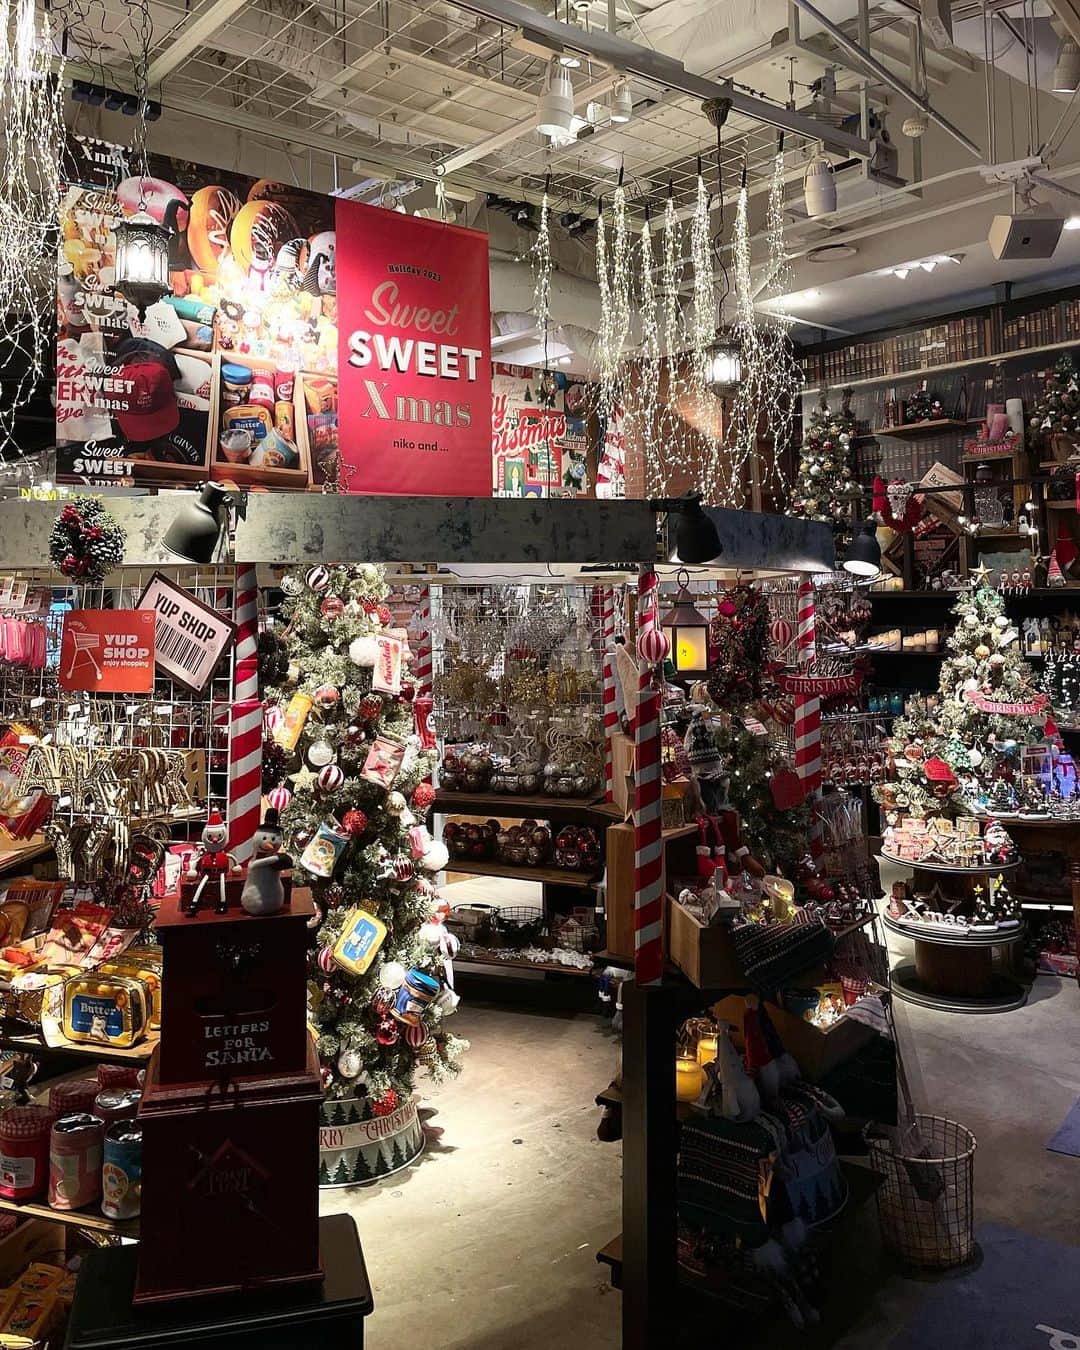 ニコアンドのインスタグラム：「🍭Sweet SWEET Xmas🍩  ~STORE LIMITED~  なんだか気持ちが高まる季節が今年もやってきました  niko and ... ではお菓子とクリスマスをテーマにした『Sweet SWEET Xmas』がスタート！🎄  niko and ... オリジナルのアイテムはもちろん、なんと原宿で人気のベーカリーショップ『The Little BAKERY Tokyo』とのコラボグッズを一部の店舗にて発売決定👏  ドーナツプリントやメニューボードをあしらったプルオーバーをはじめ、キャップやロゴソックスなどを展開いたします！  また TOKYO 店限定でオリジナルのカフェメニューも発売決定！✨  ■「The Little BAKERY Tokyo」コラボアイテム概要  発売日：2023年10月27日（金）10:00～  展開店舗 ： 🍩niko and ... イオンモール旭川西 🥤niko and ... TOKYO 🍩niko  and ... 二子玉川ライズ S.C 🥤niko and ... TOKYOBAY 🍩niko and ... 横浜ベイクォーター 🥤niko and ... イオンモール白山 🍩niko and ... イオンモール豊川 🥤niko and ... mozoワンダーシティ 🍩niko and ... 神戸ハーバーランドウミエ 🥤niko and ... ららぽーと福岡  ✨公式WEBストア .st(ドットエスティ) ※店舗によって発売日が異なる場合がございます。  ご不明点がございましたら、 DMにてお気軽にお問い合わせくださいませ！  ご来店お待ちしております！  #ニコトーキョーzakka  @nikoandtokyo  ーーーーーーーーーーーーーーーー 　　 　　OPEN 11:00 CLOSE 21:00  ーーーーーーーーーーーーーーーー  #nikoand #nikoandtokyo #ニコアンド #ニコアンド雑貨 #クリスマス #クリスマスツリー #クリスマスリース #クリスマスプレゼント #オーナメント #アメリカン #アメリカン雑貨 #おすすめ雑貨 #生活雑貨 #インテリア #インテリアコーディネート #インテリア小物 #雑貨屋さん巡り #東京雑貨屋 #クリスマスデート #クリスマスデートスポット #christmas #christmasdecor #christmastime #christmasdecorations #christmasmood #japantravel #tokyo #tokyochristmas #japanchristmas」